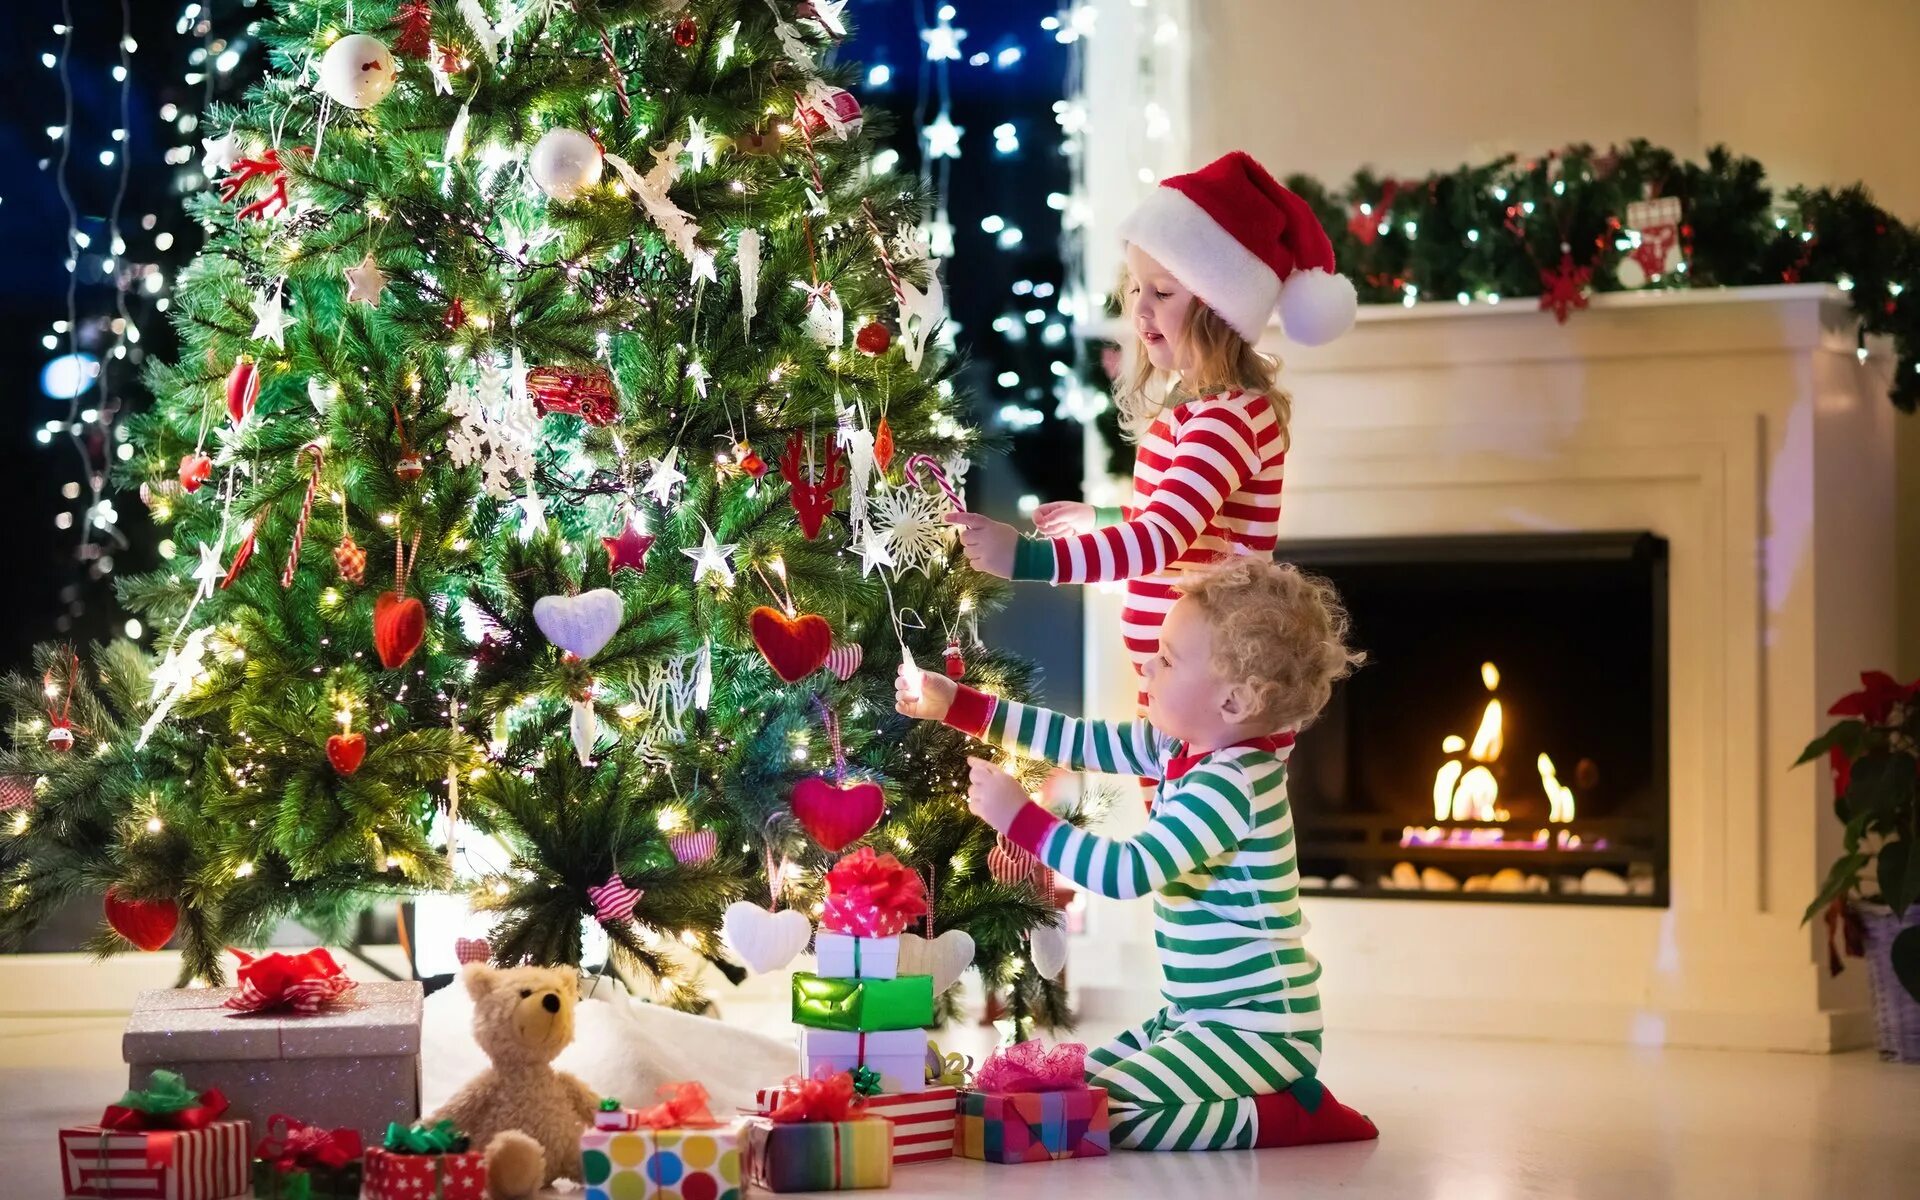 Елка Новогодняя украшенная. Подарки для елки. Дети наряжают елку. Красивая елка с подарками.